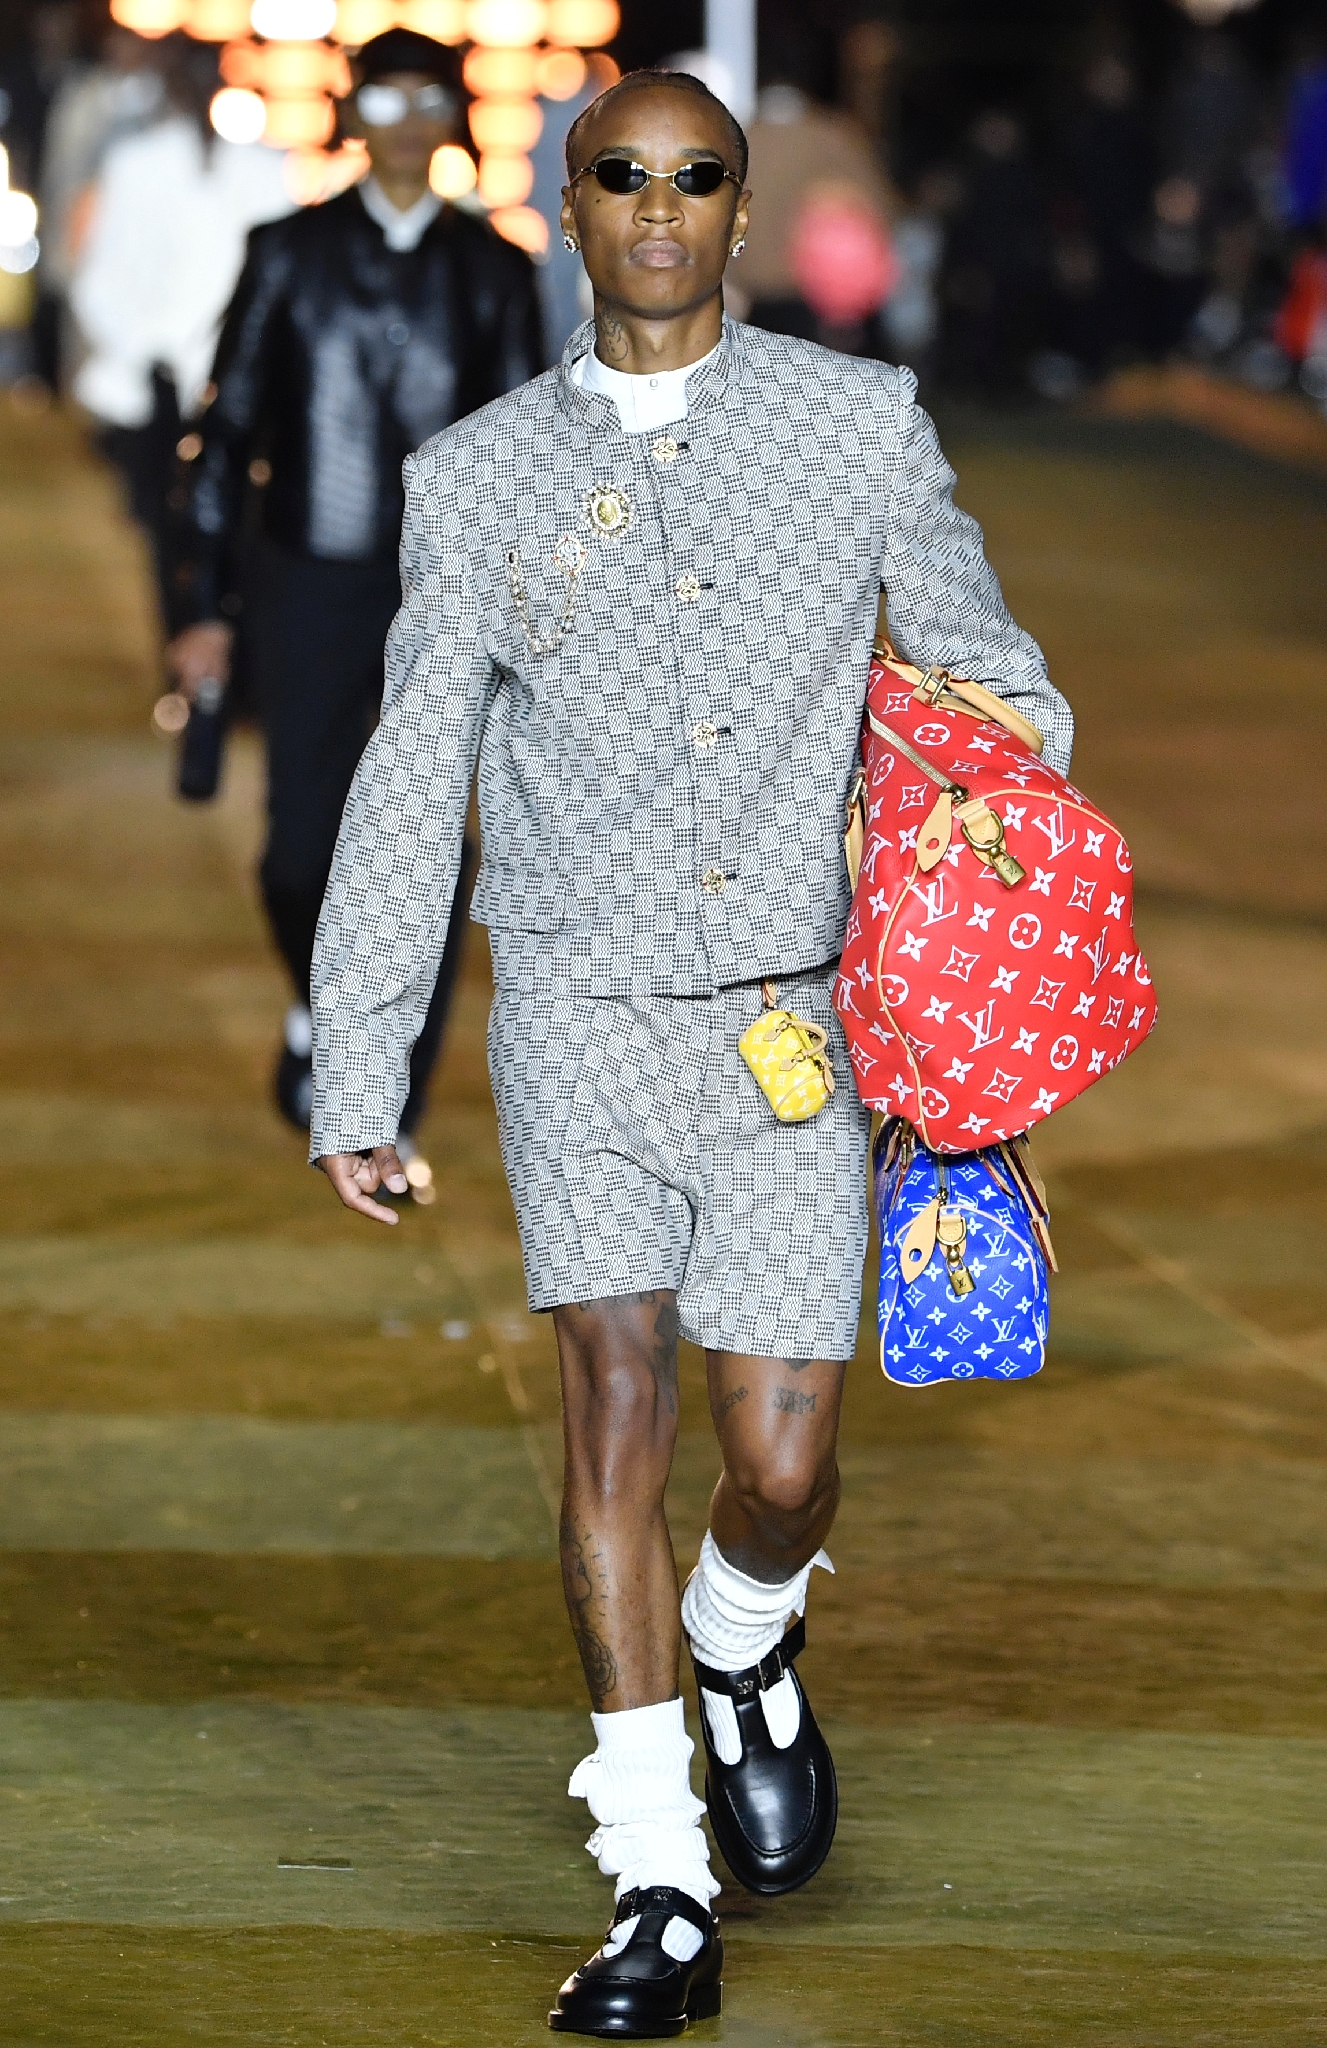 Paris Fashion Week masculine : Louis Vuitton s'inspire de l